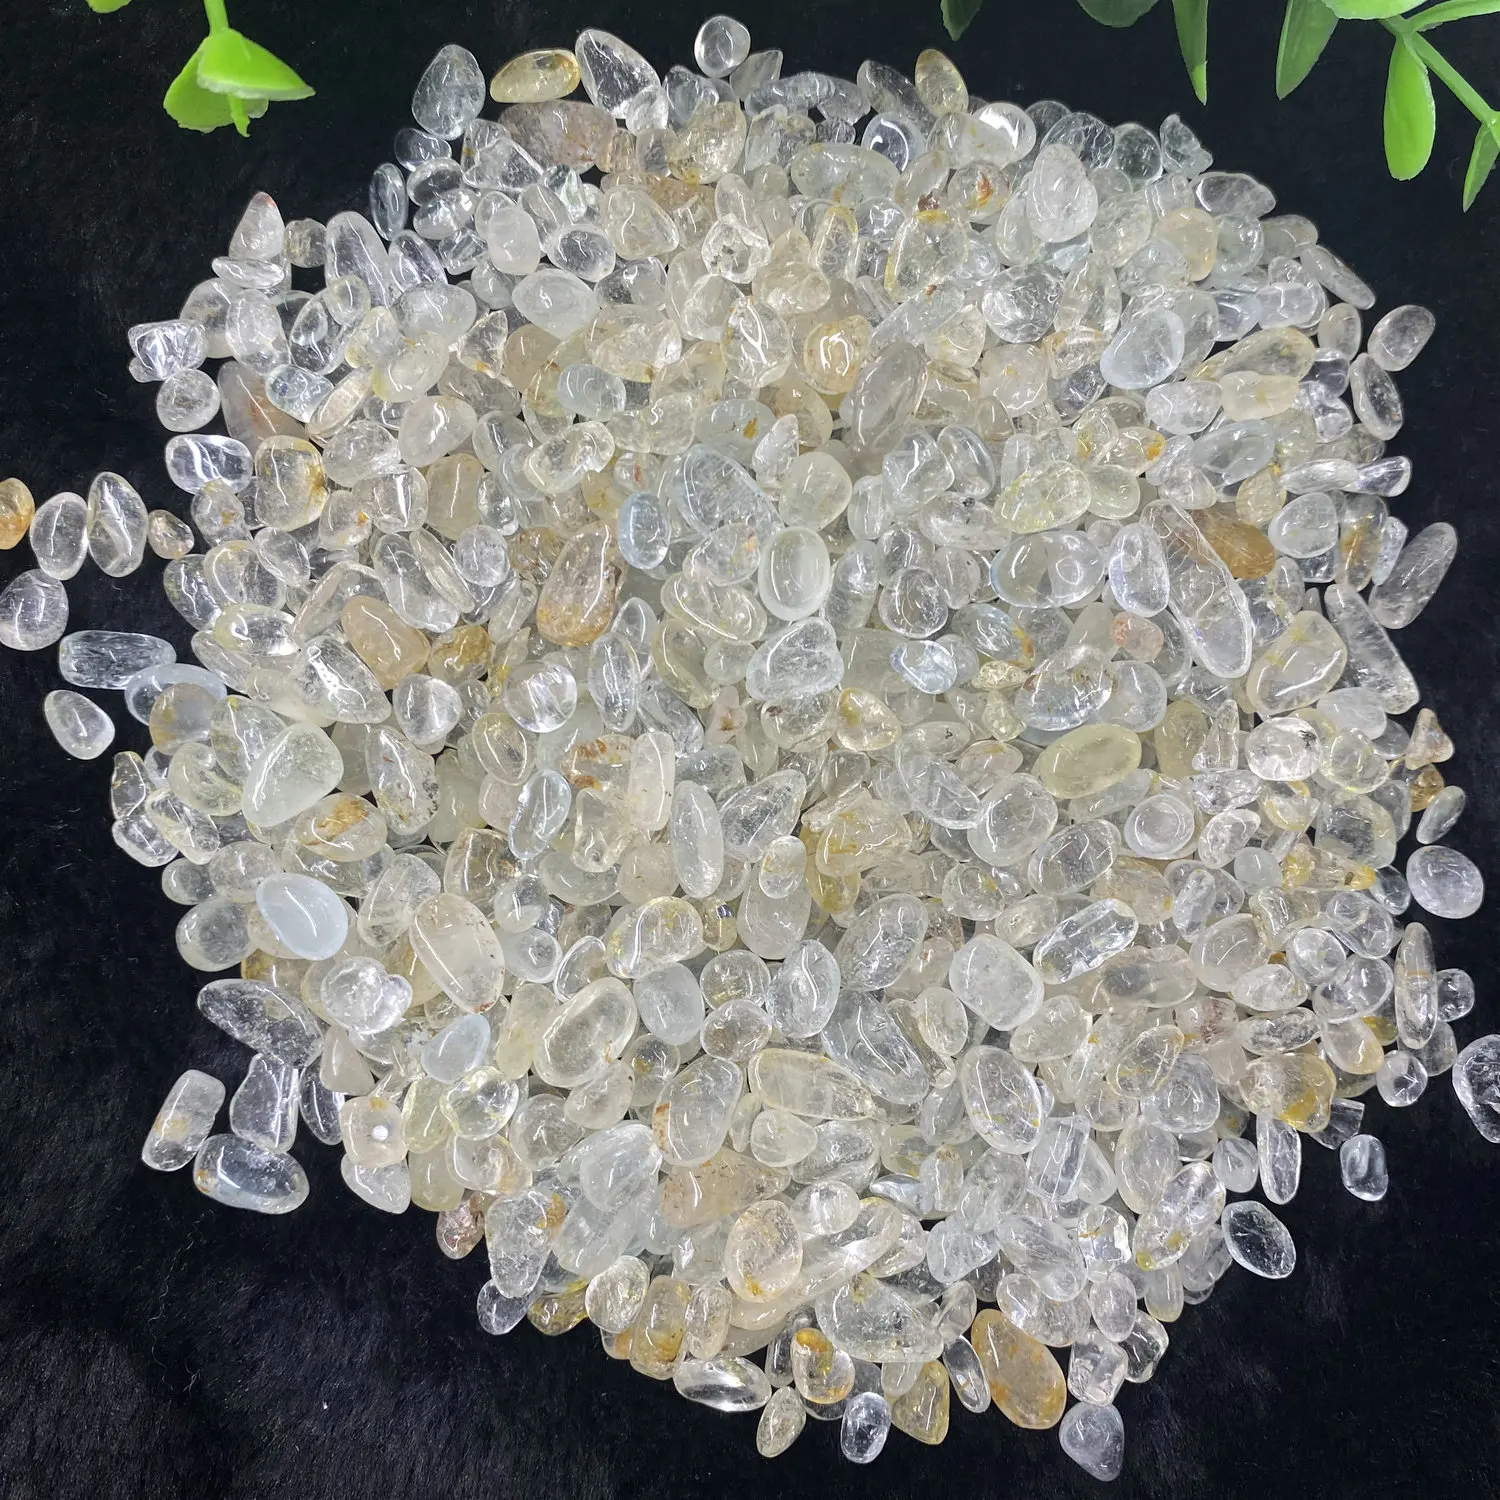 7-9mm 500g Natural Topaz Polished Quartz Crystal Gravel Healing Energy Mineral Specimen Collection Garden Home Decor images - 6